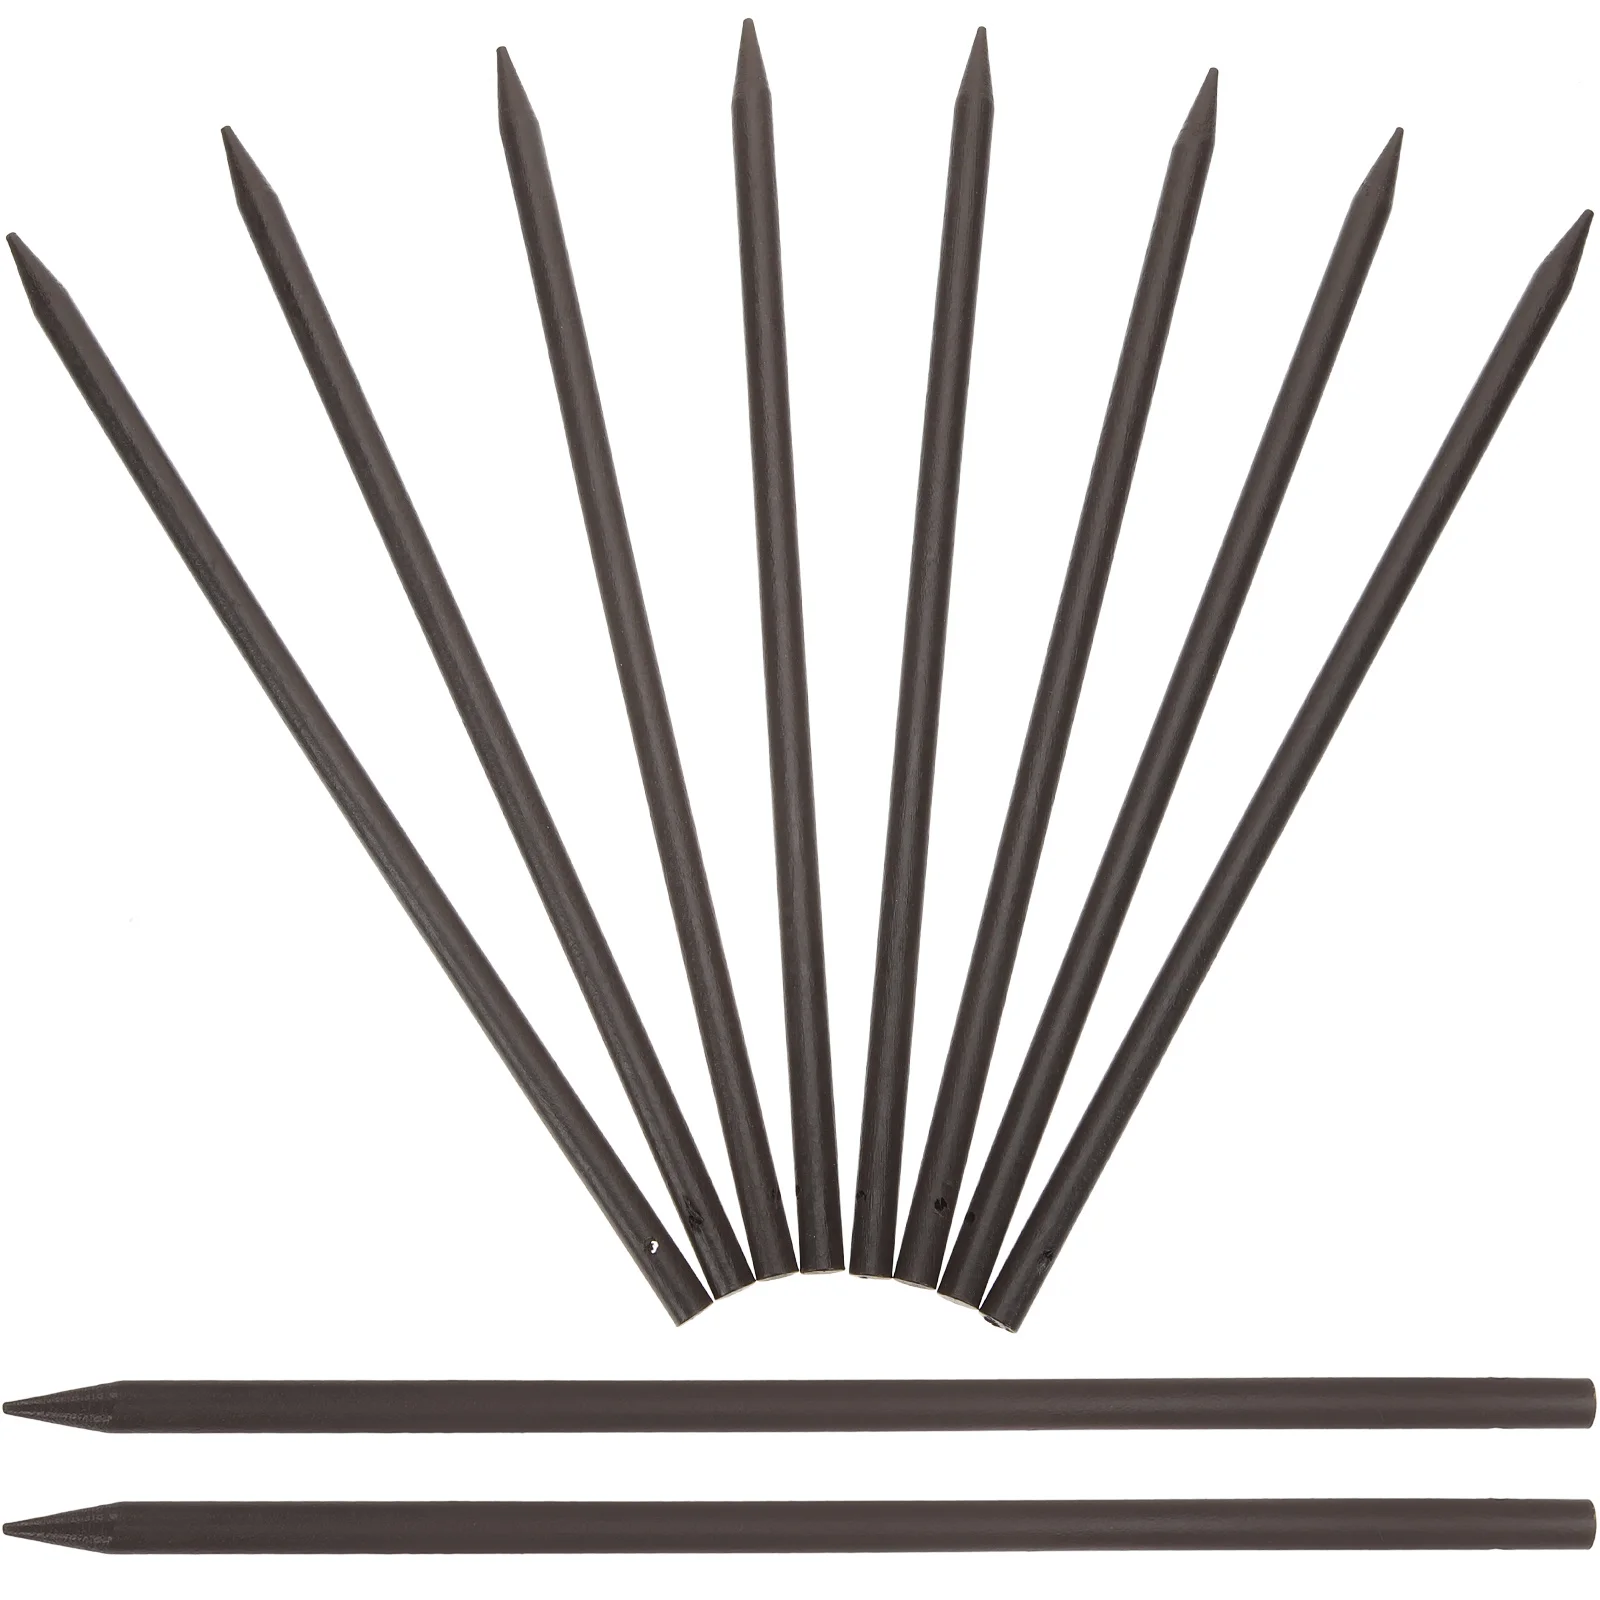 

Палочки для еды, искусственные деревянные палочки, прически для укладки в пучок, ретро декоративные шпильки для волос, древние японские китайские